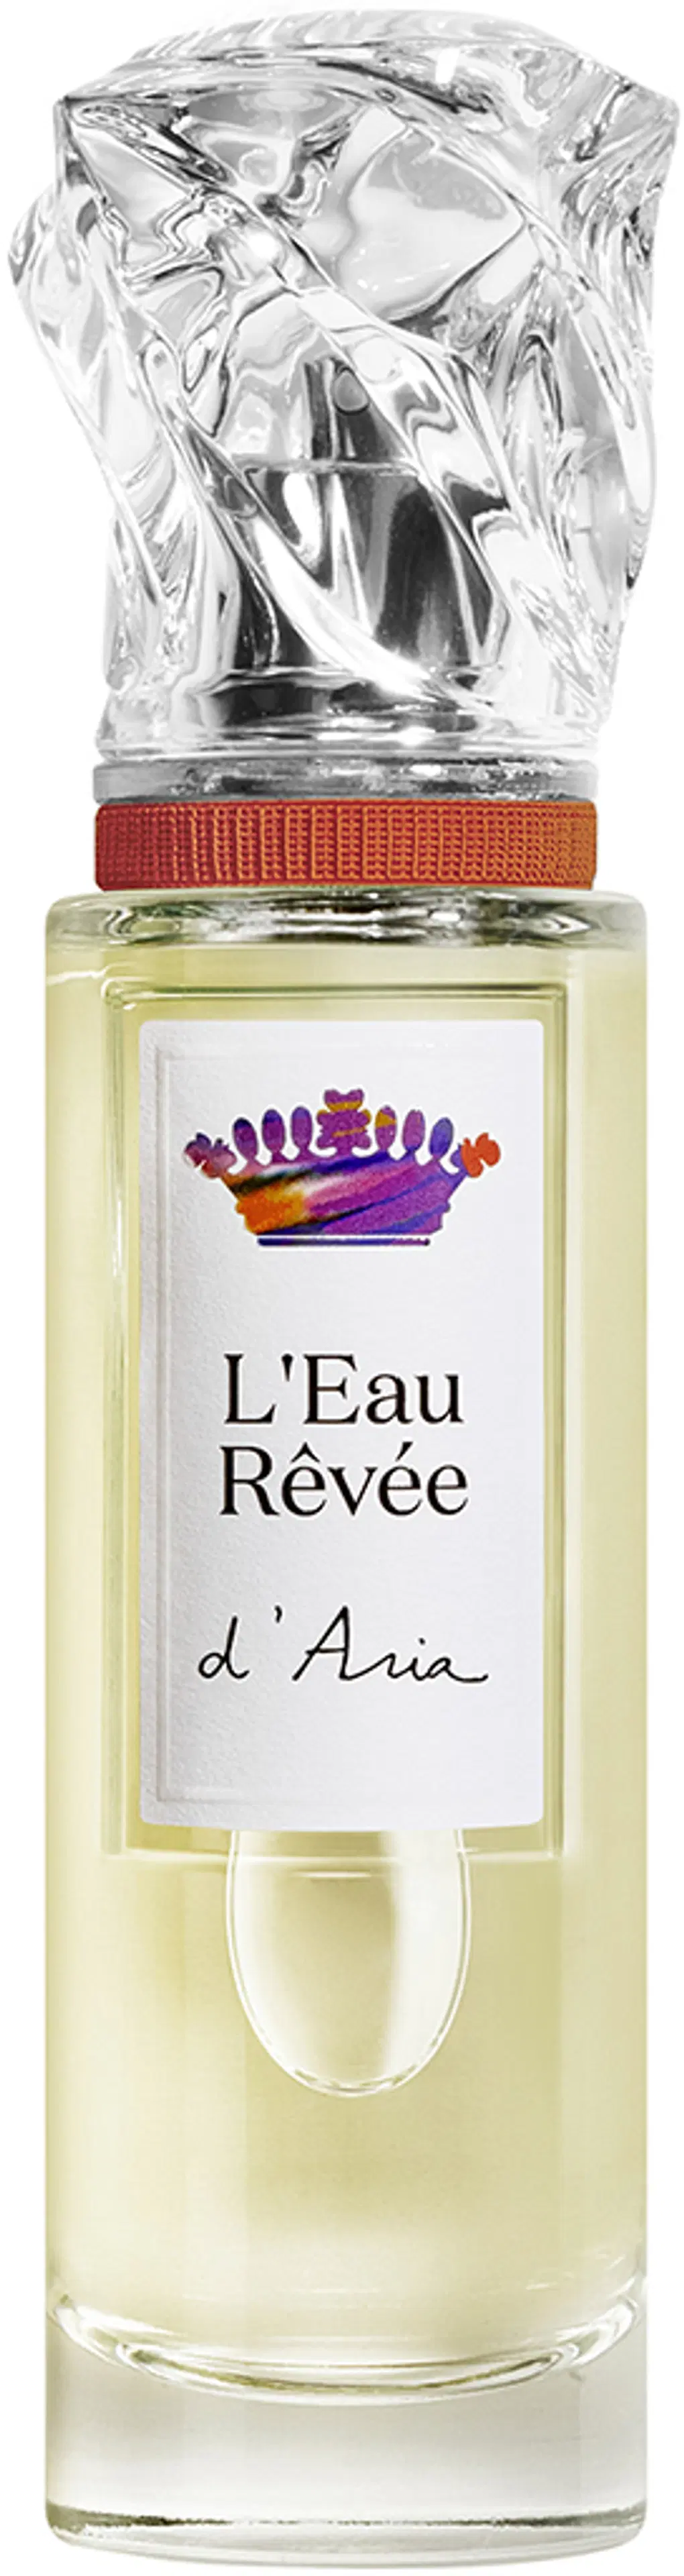 Sisley L'Eau Rêvée d'Aria EdT tuoksu 50 ml